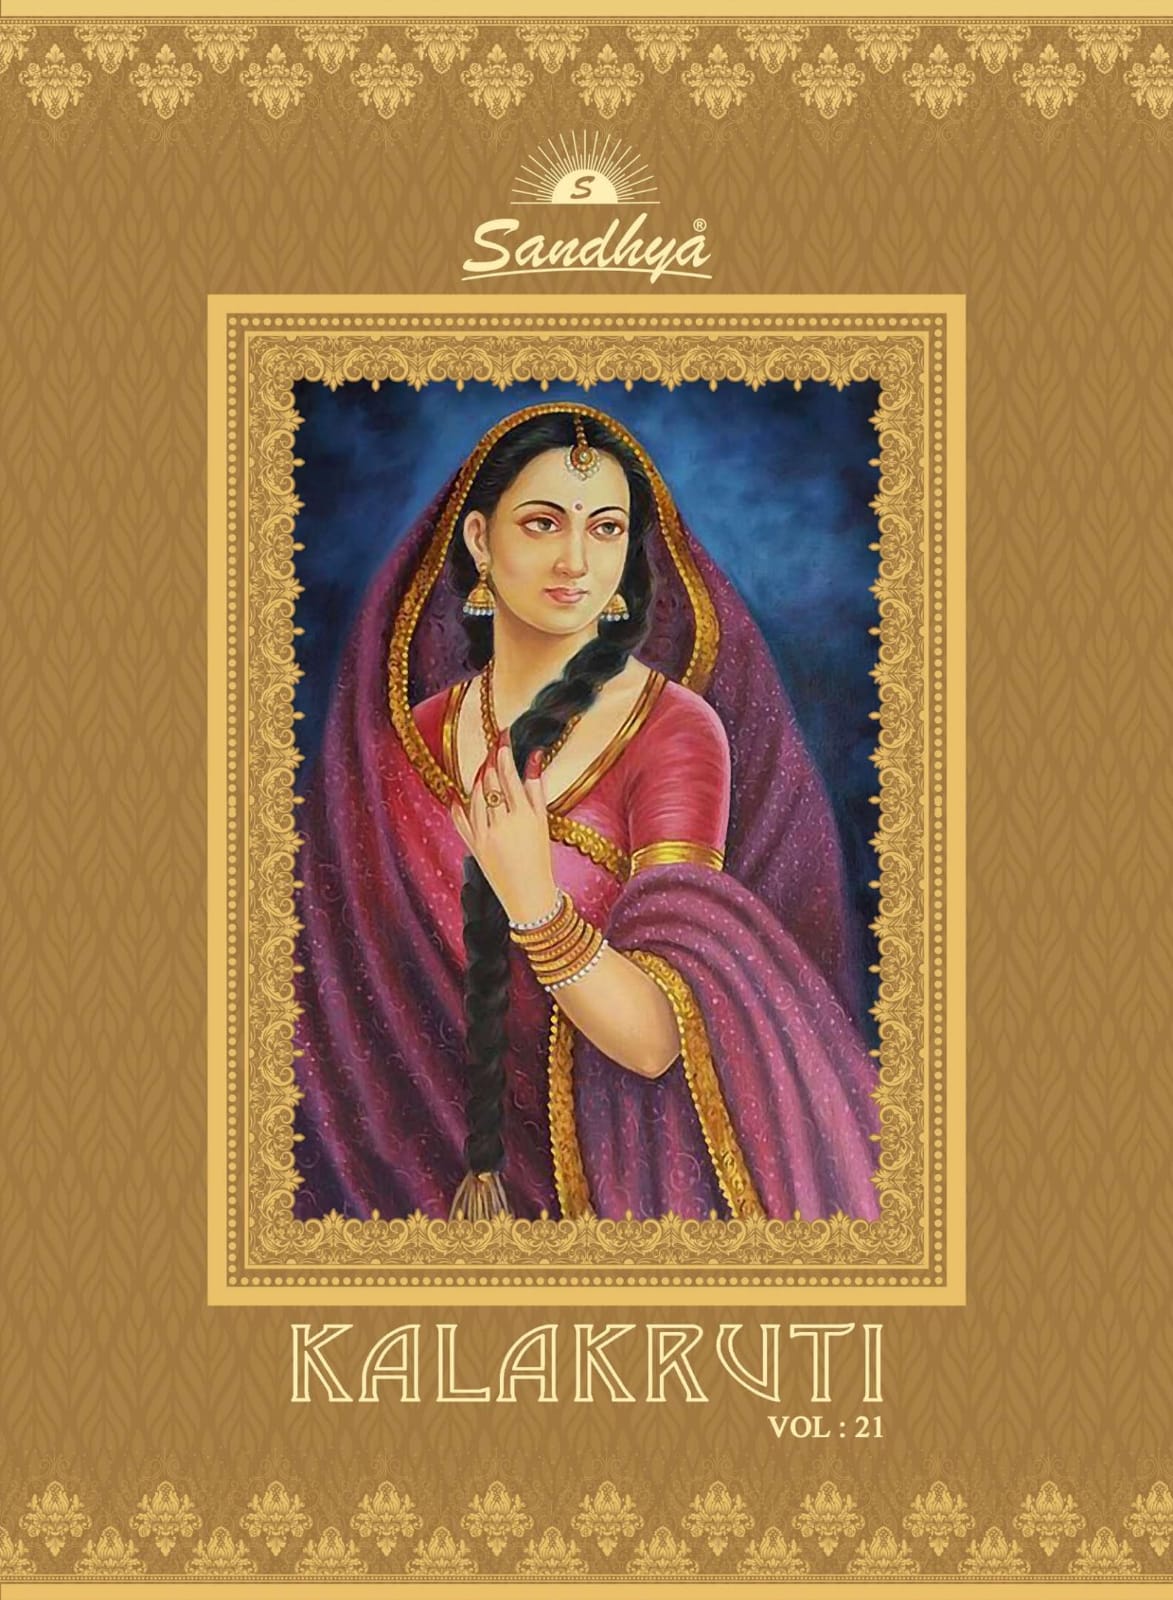 Sandhya Kalakruti Vol 21 Printed Cotton Readymade Kurtis Col...